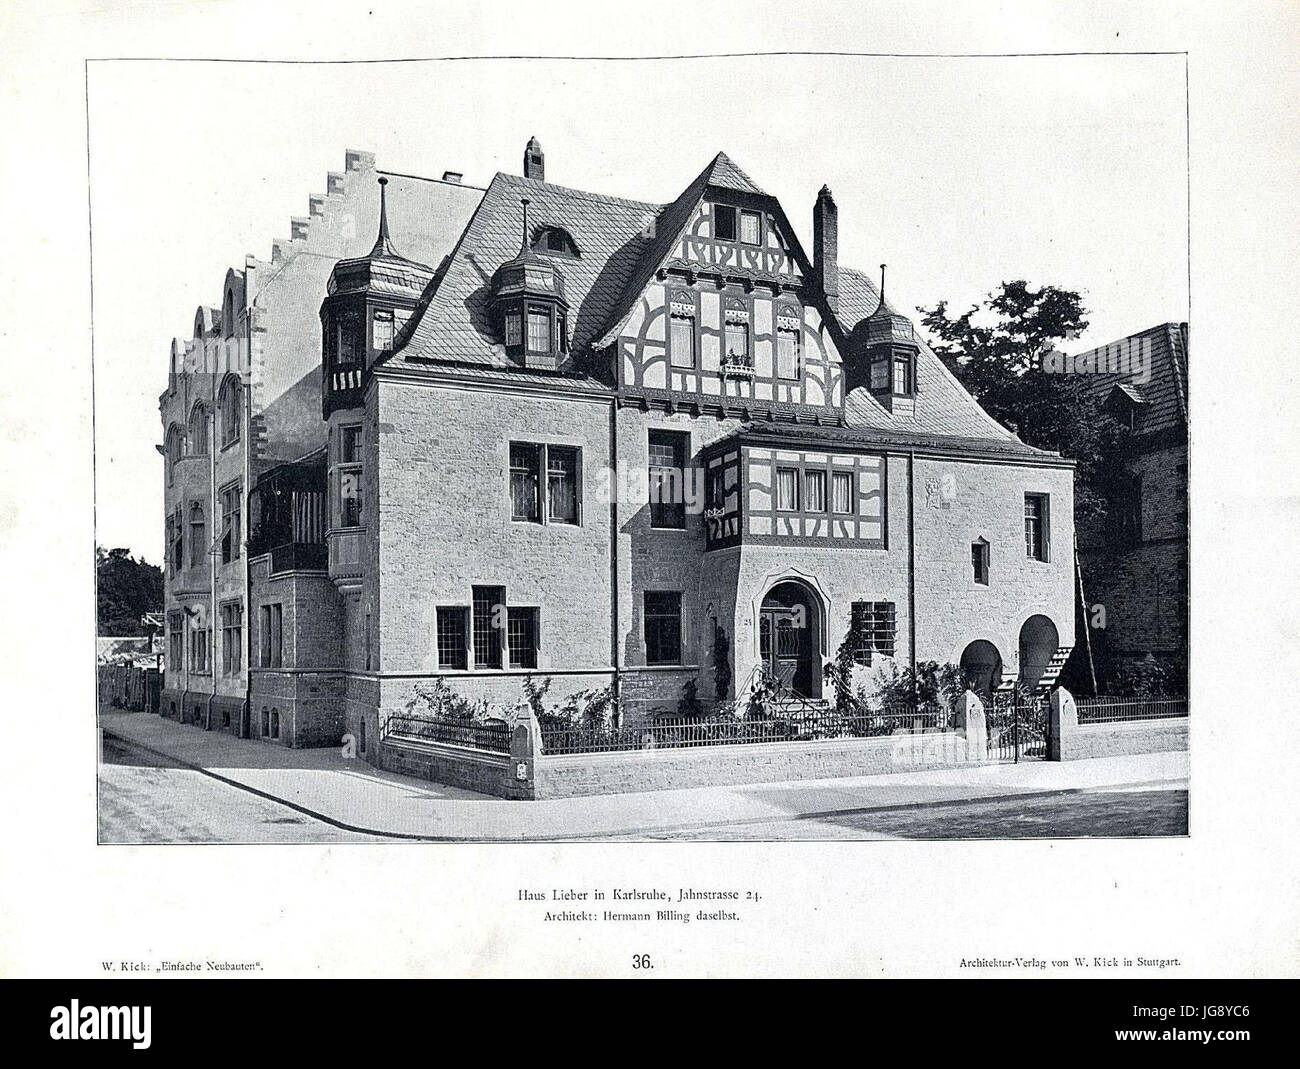 Wilhelm-Kick gegen Neubauten, Stuttgart 1890, Haus Lieber in Karlsruhe, Jahnstraße 24, Architekt Hermann Billing aus Karlsruhe Stockfoto